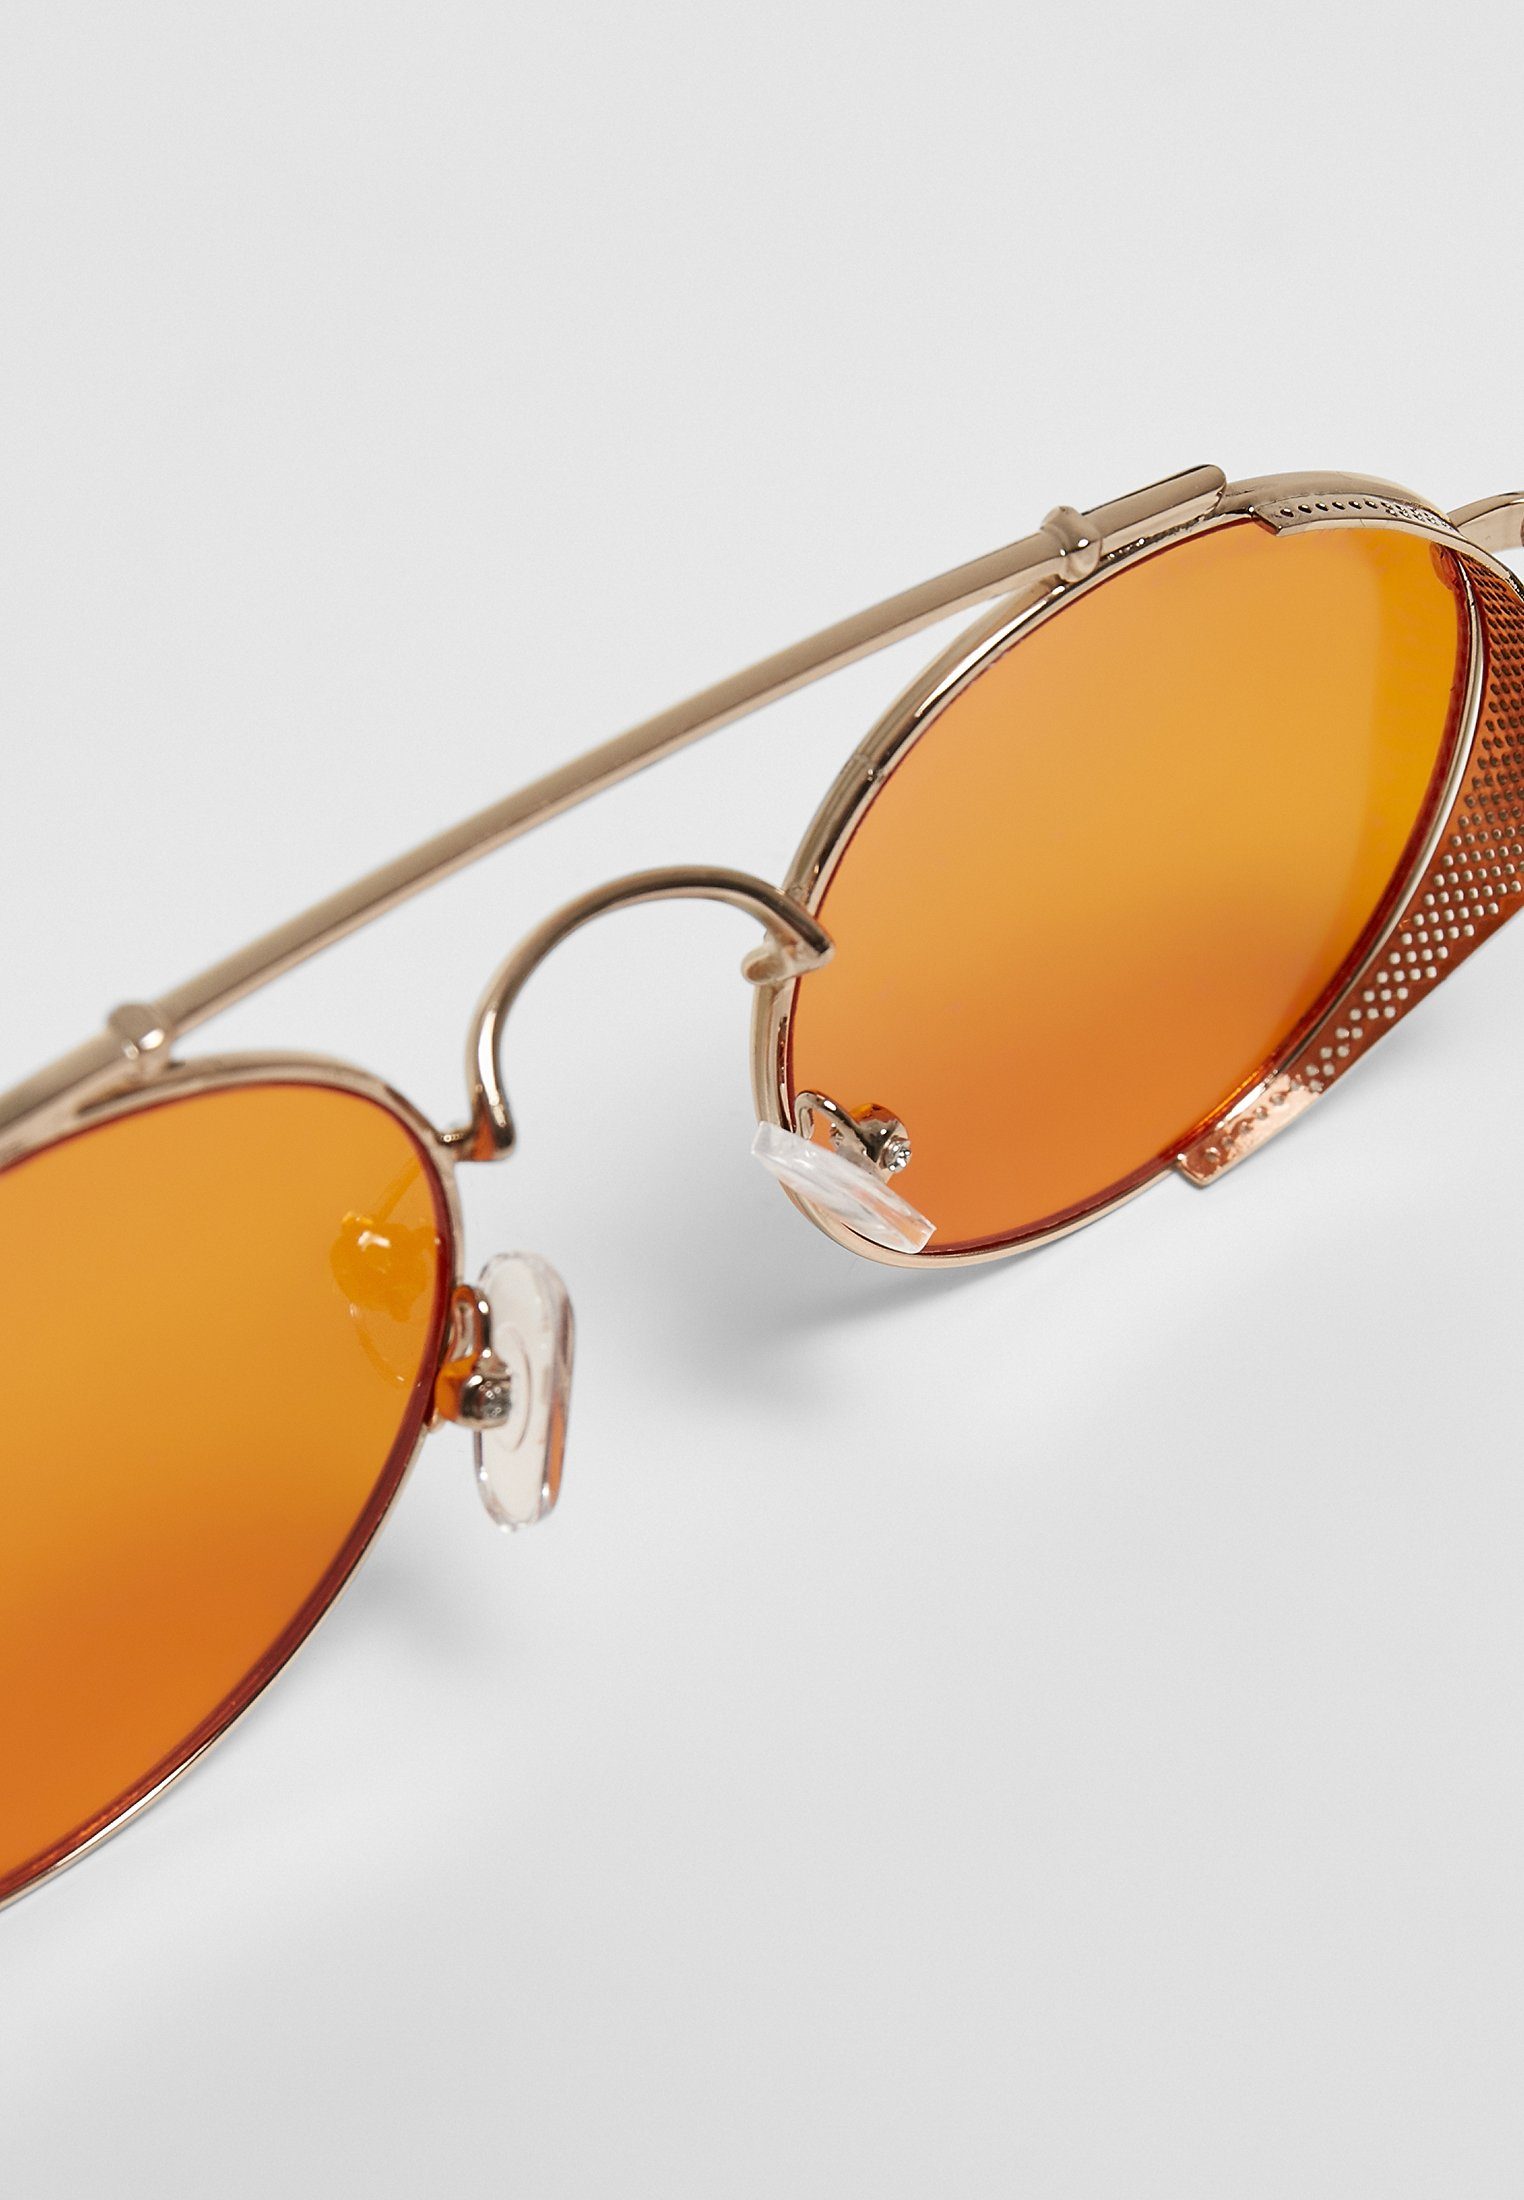 URBAN Sonnenbrille Unisex Sunglasses gold/orange Chios CLASSICS